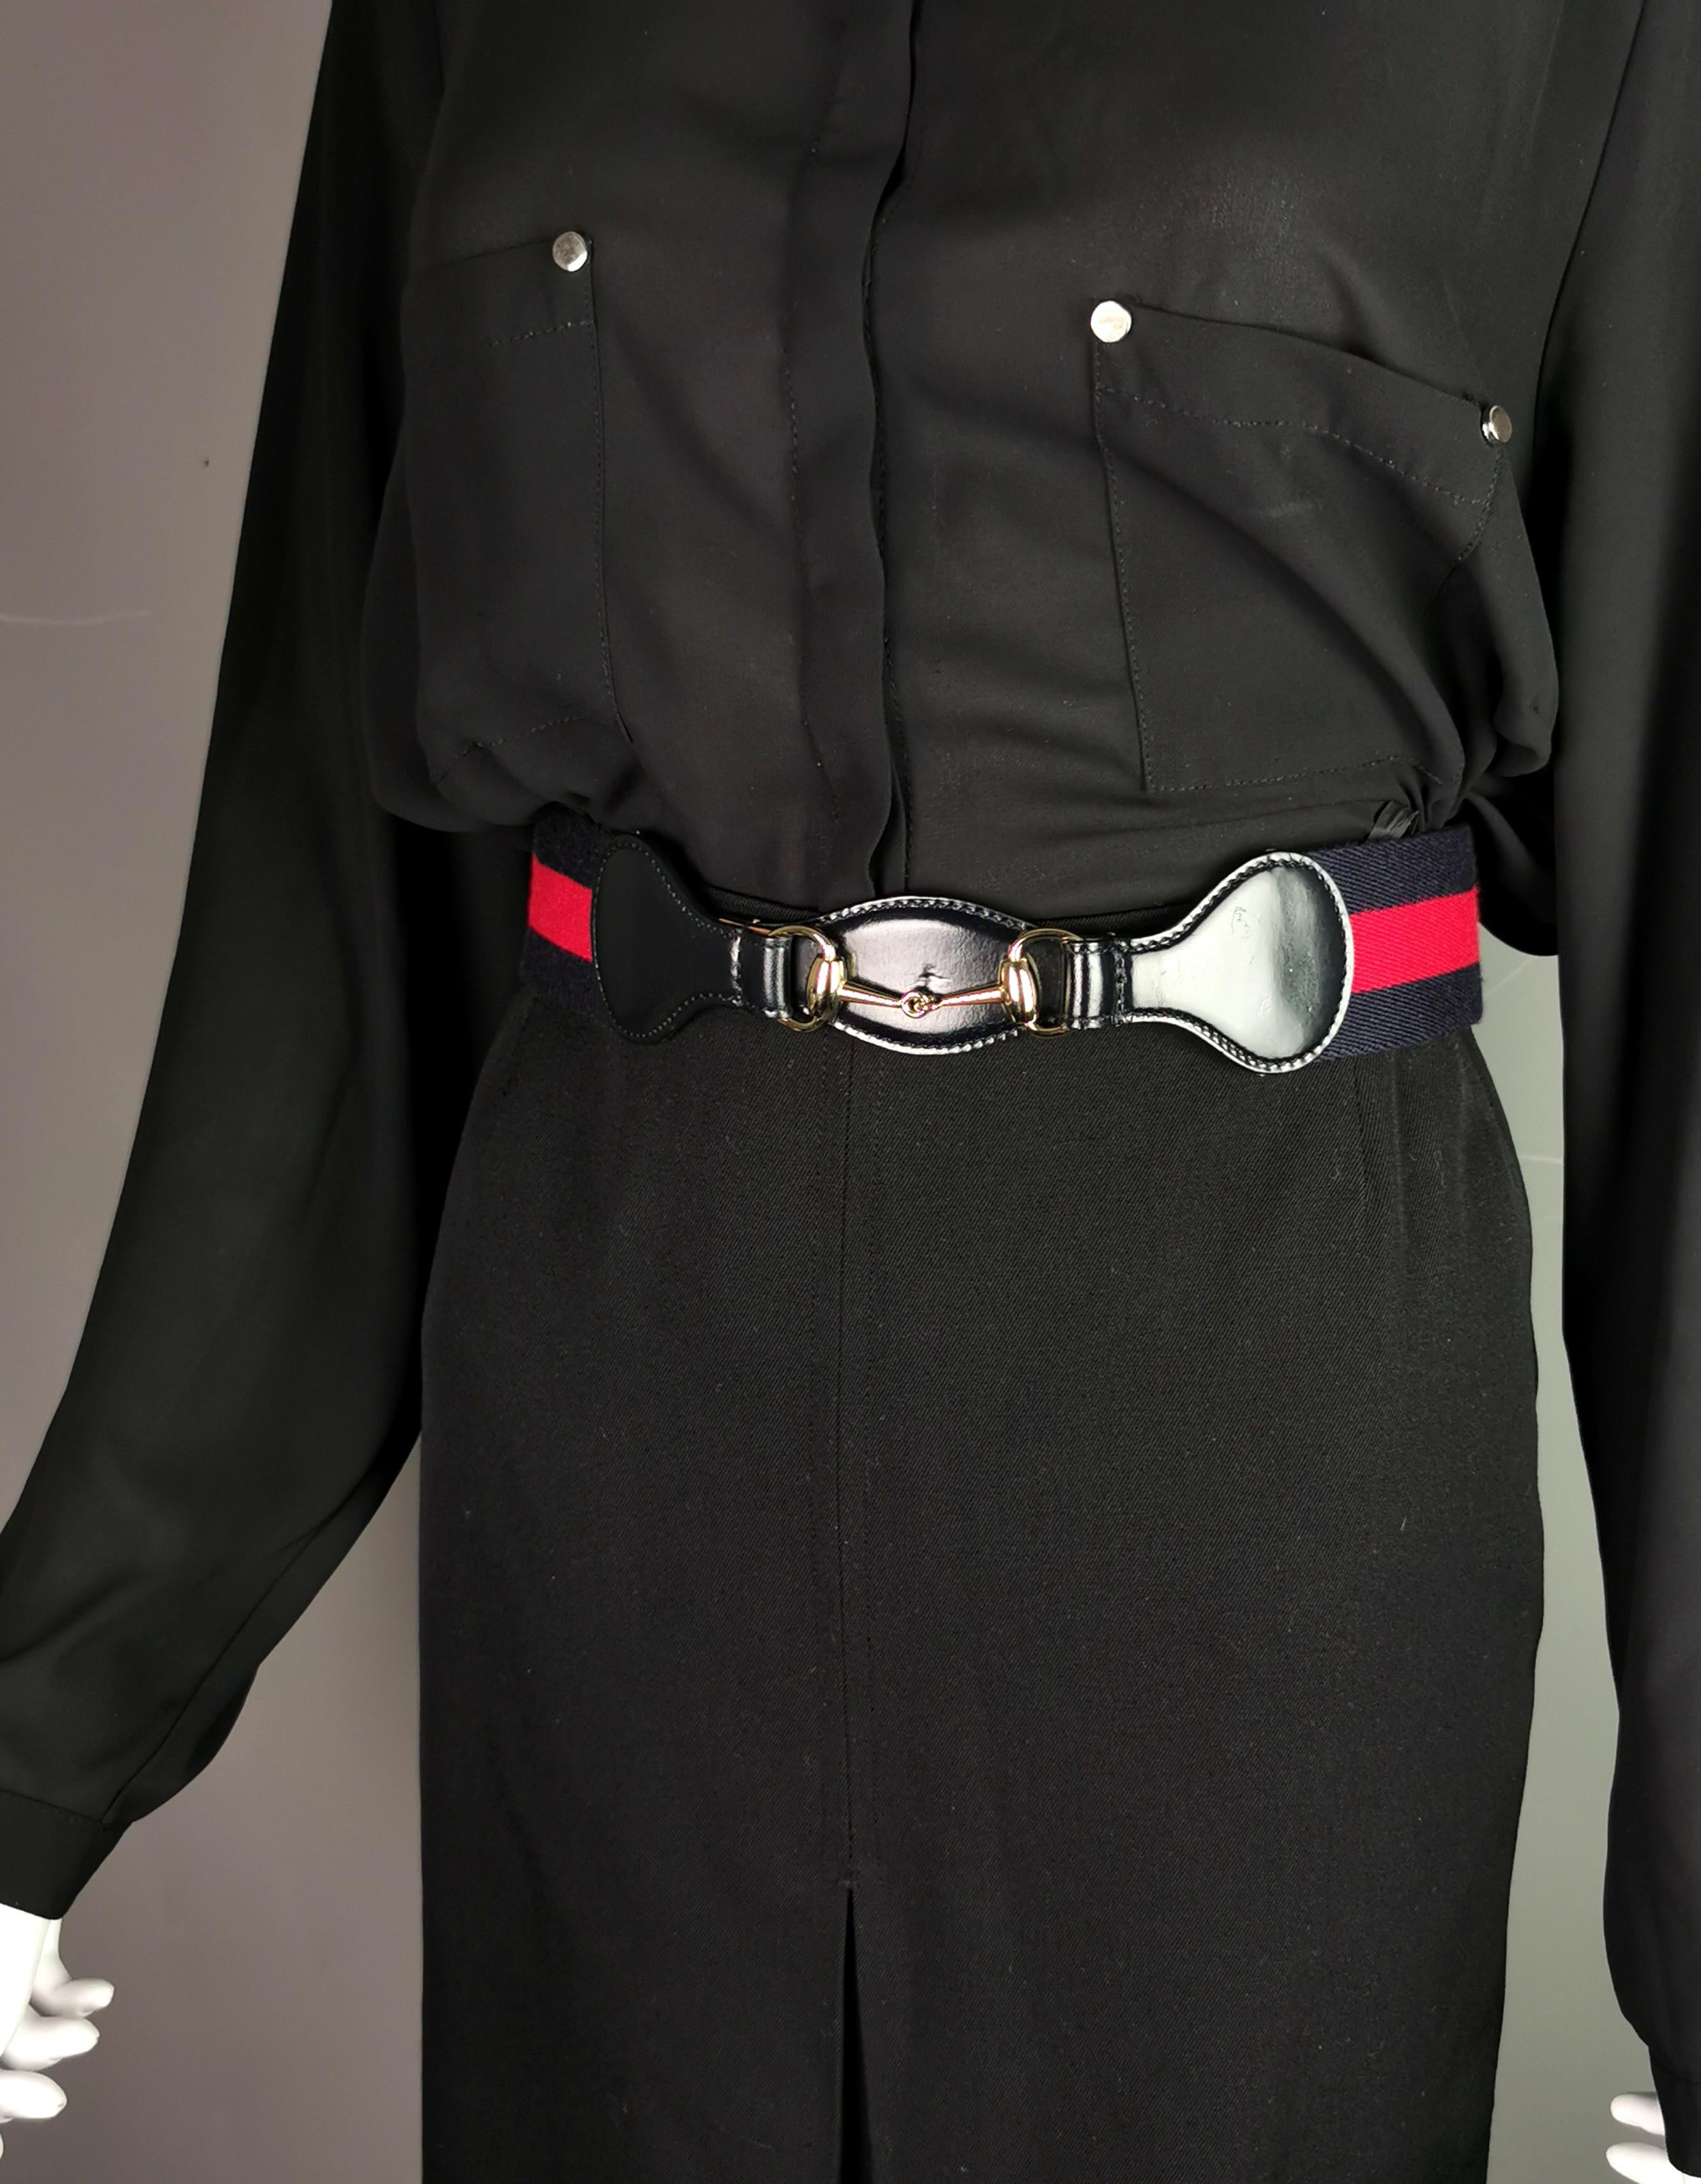 Das ultimative Must-Have-Accessoire ist dieser stilvolle Vintage-Gürtel von Gucci.

Der Gürtel ist aus klassisch gestreiftem Canvas mit einer glänzenden navyfarbenen Lederfront und Riemen sowie einem goldfarbenen Metall-Pferdekopf auf der